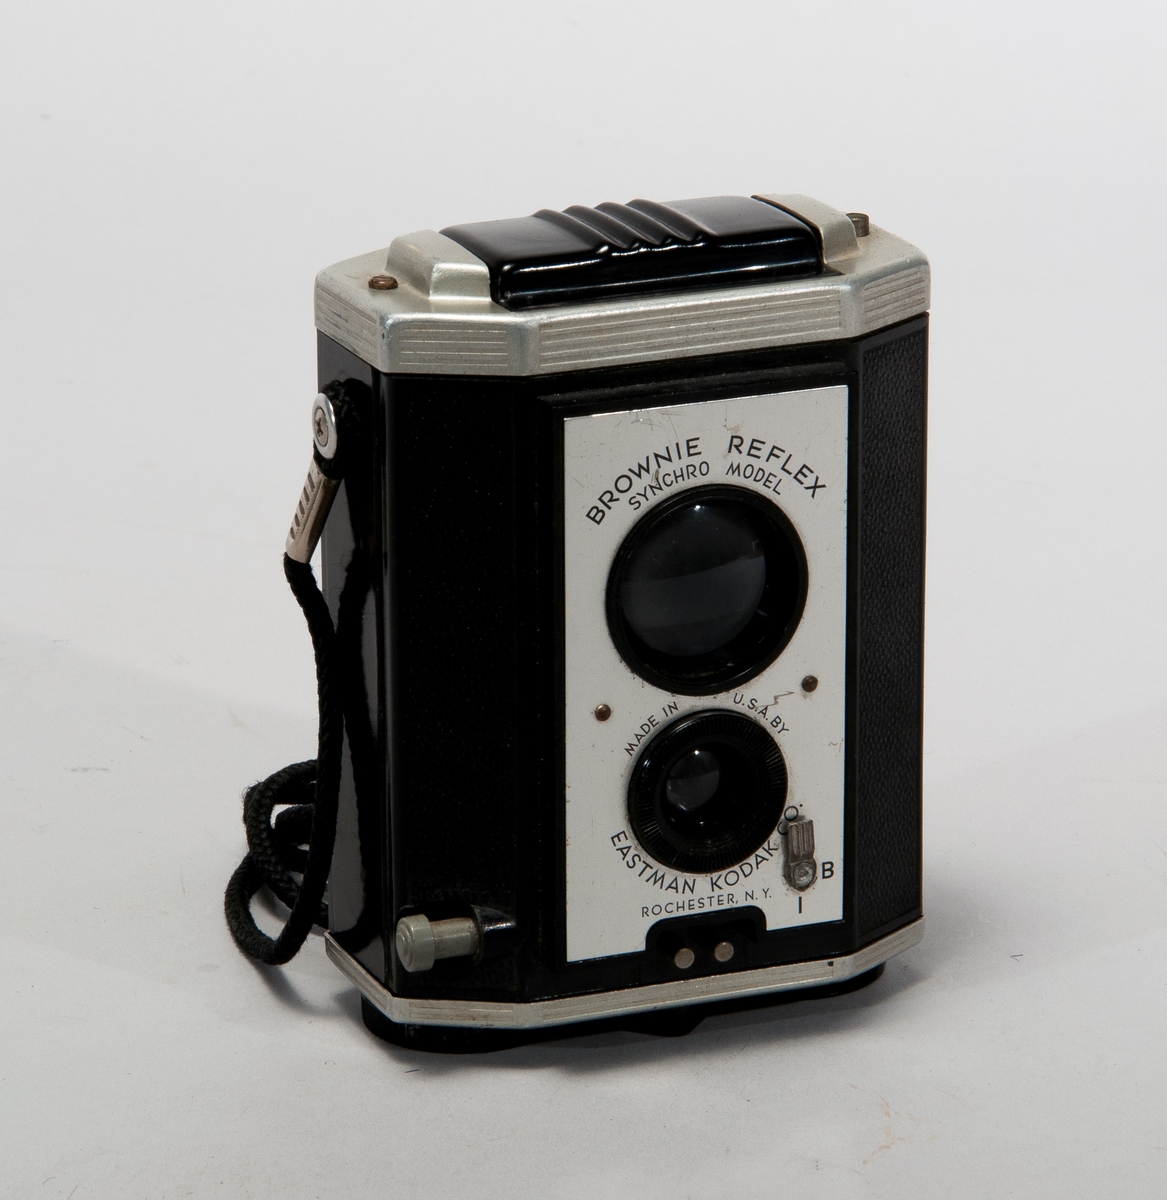 Tvåögd spegelreflexkamera för mellanformat, tillverkad i bakelit och metall. Med axelrem i textilmaterial.
Märkt: Brownie Reflex Synchro Model.